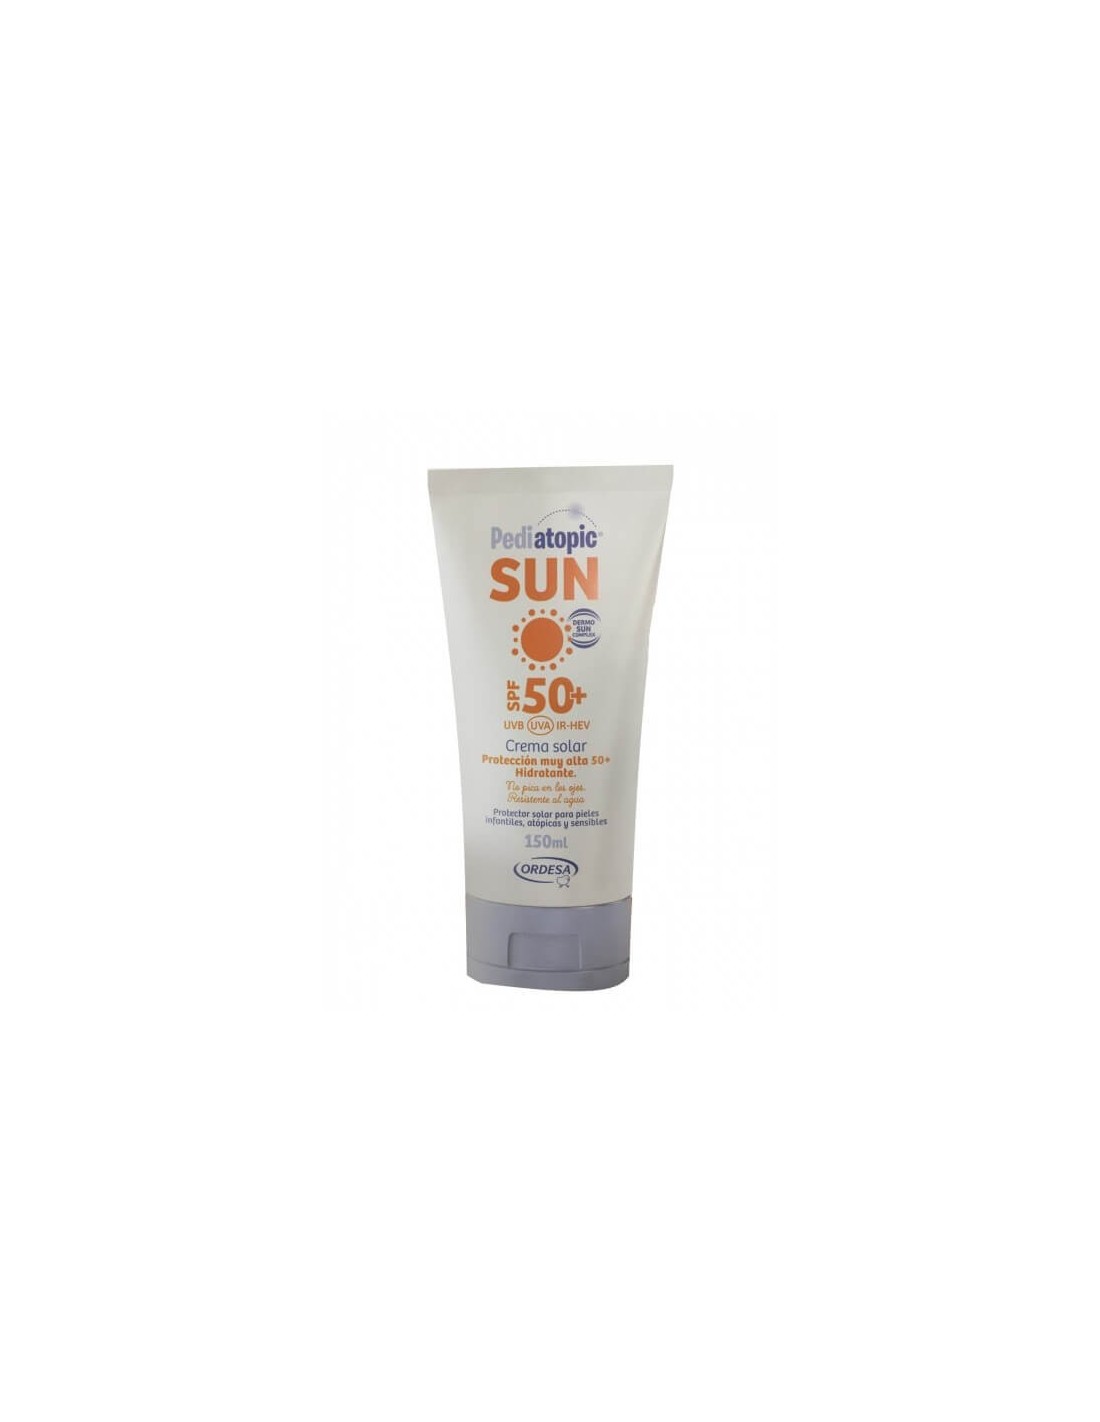 Pediatopic Sun Crema Facial Spf50+ 150 ml